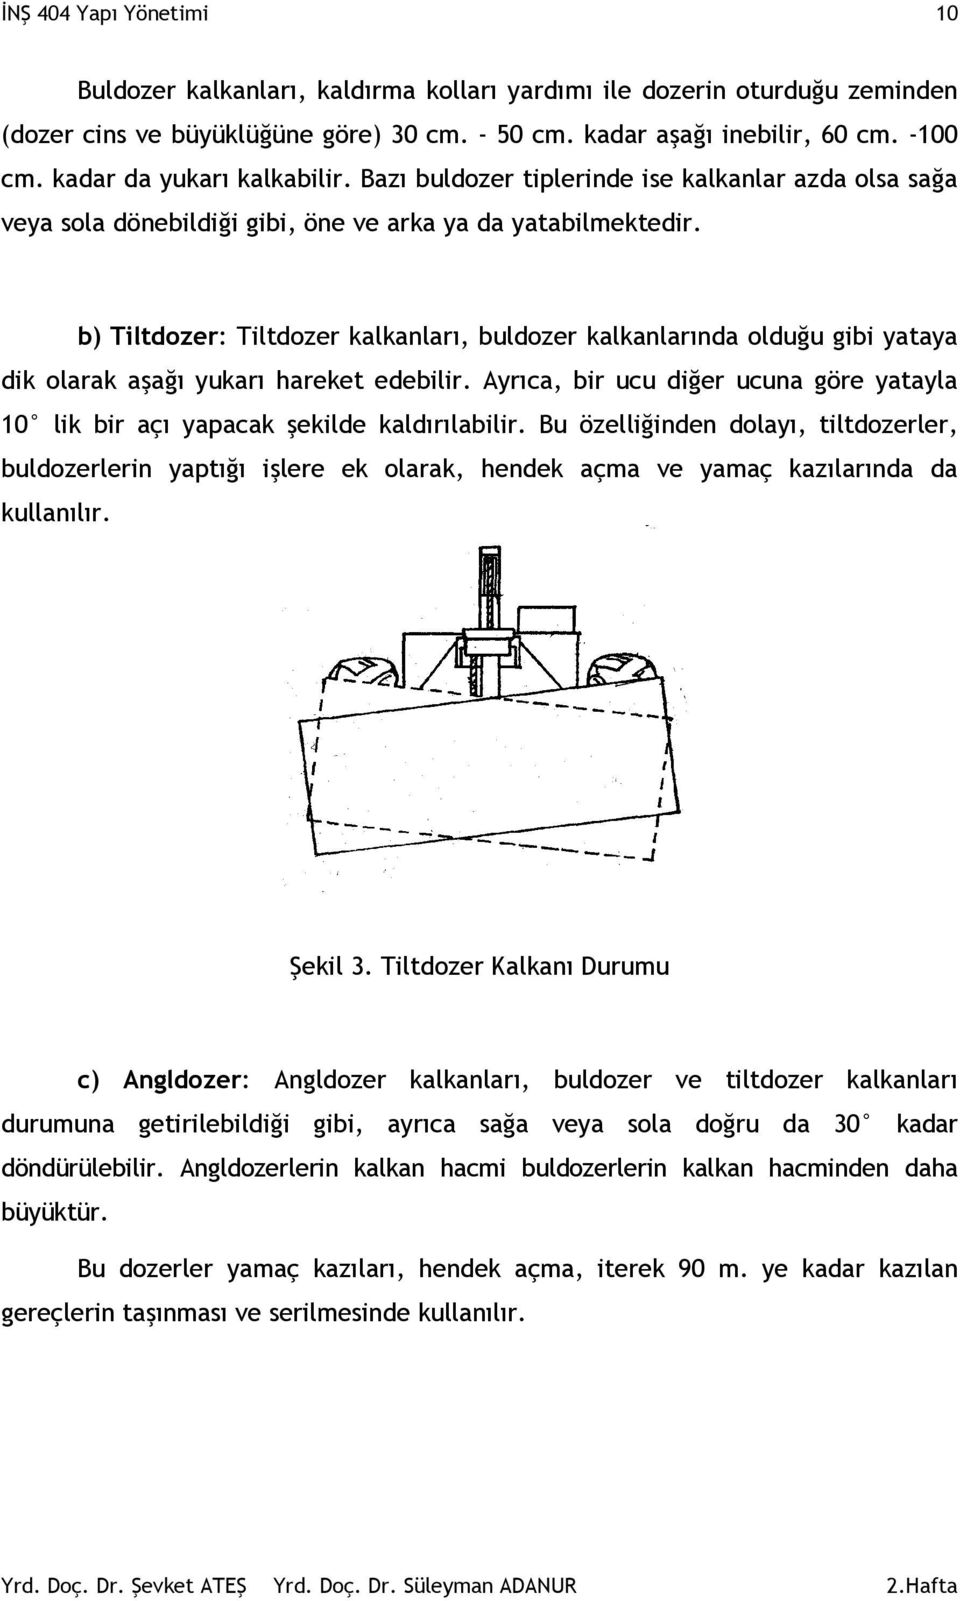 b) Tiltdozer: Tiltdozer kalkanları, buldozer kalkanlarında olduğu gibi yataya dik olarak aşağı yukarı hareket edebilir.